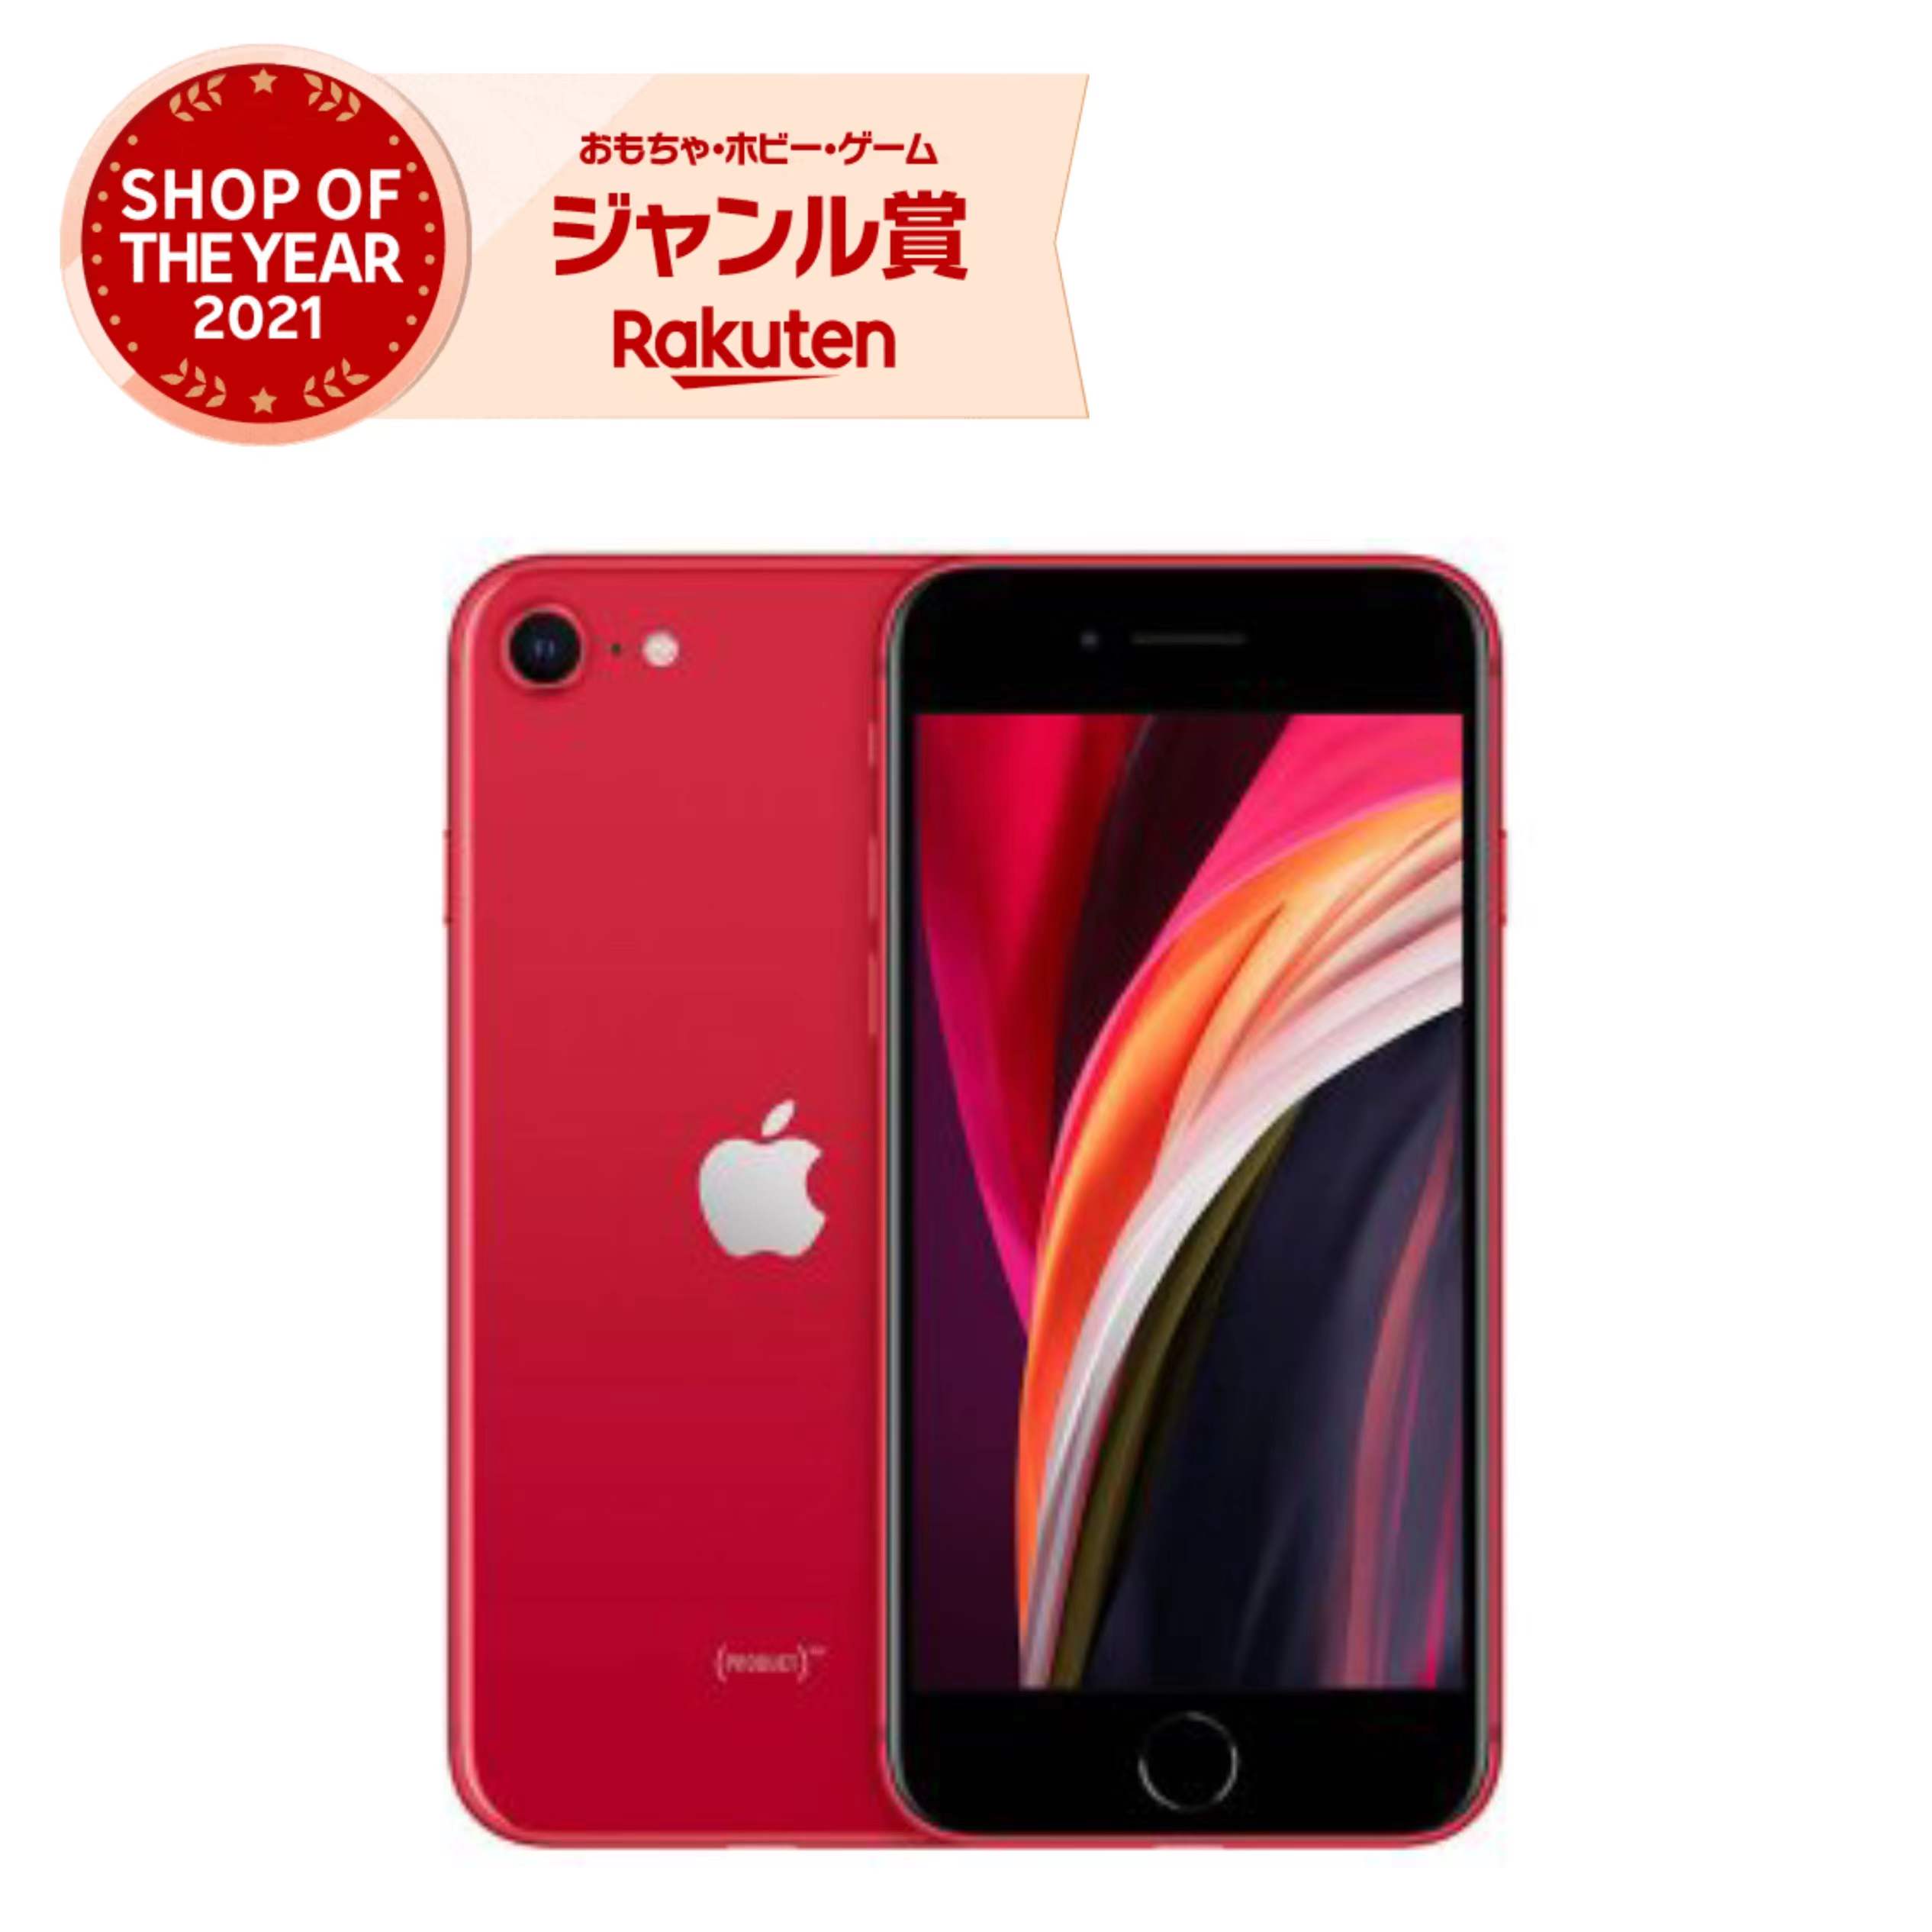 iPhone SE 第2世代 RED マーケティング 開催中 SIMフリー 128GB